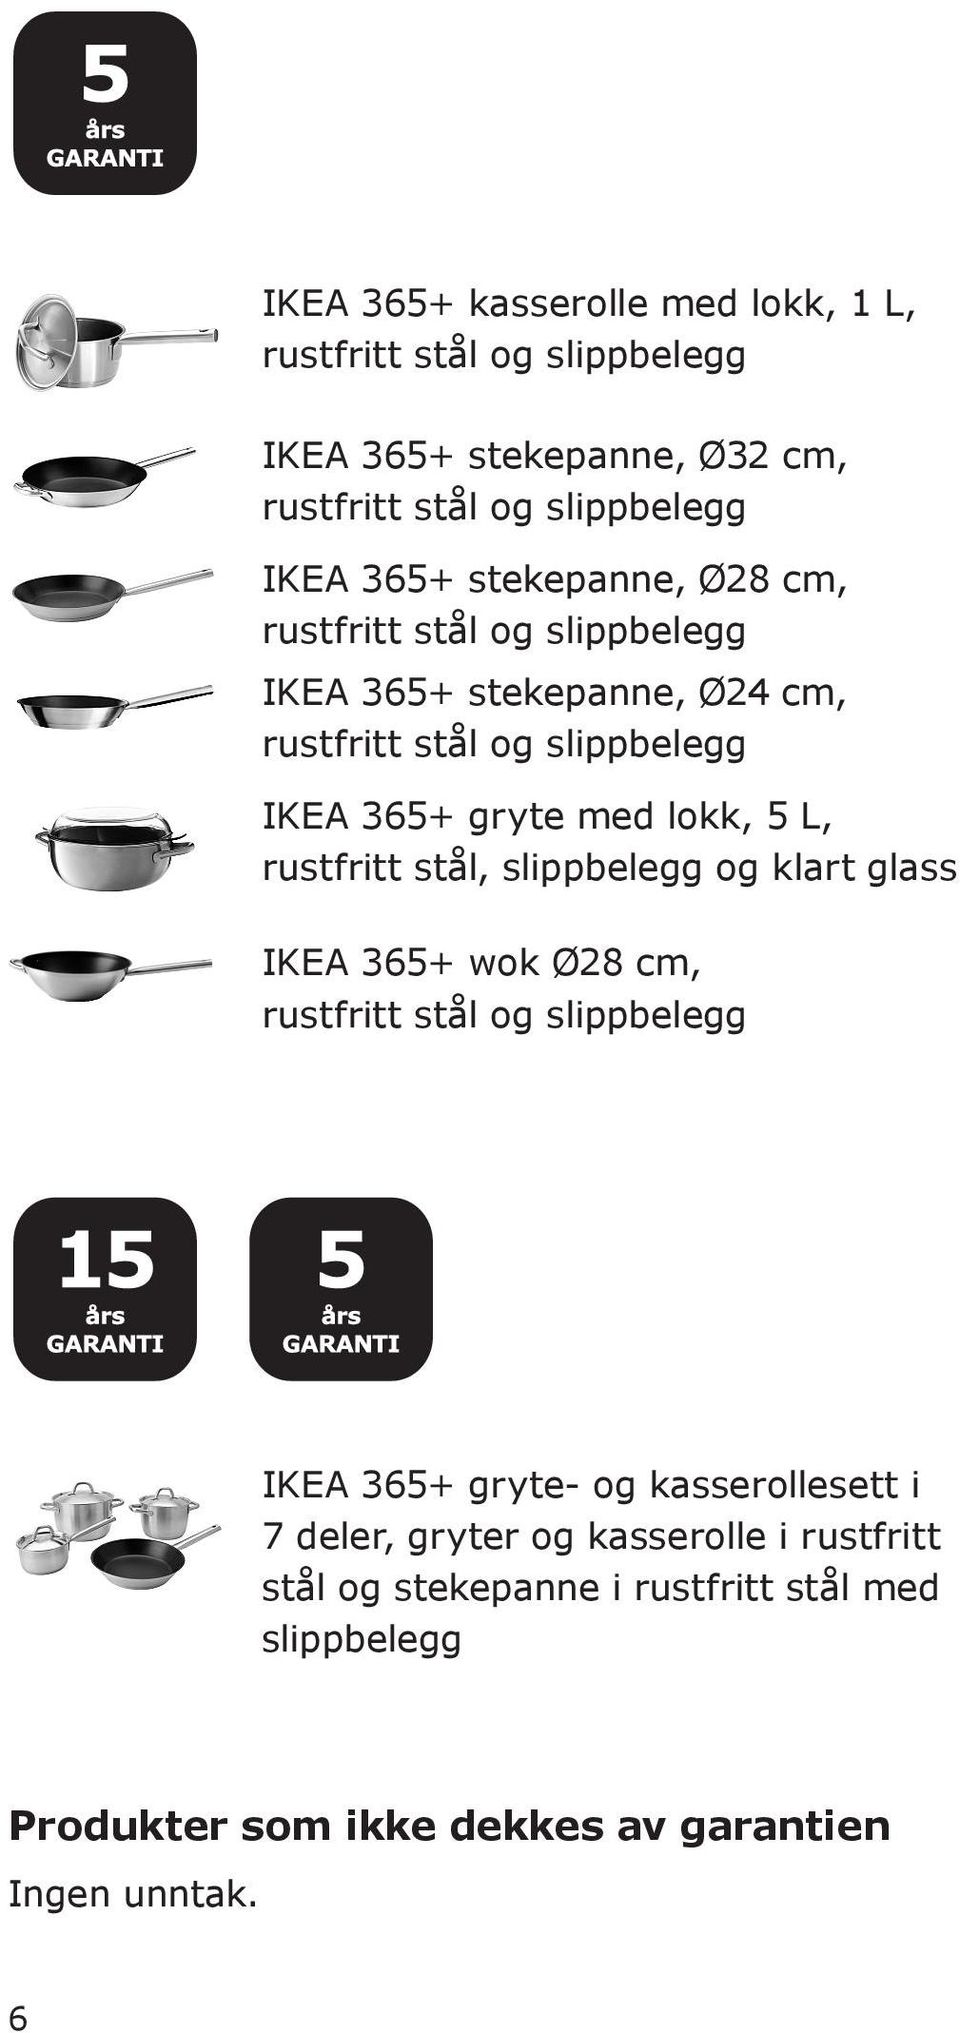 slippbelegg og klart glass IKEA 365+ wok Ø28 cm, og slippbelegg IKEA 365+ gryte- og kasserollesett i 7 deler,